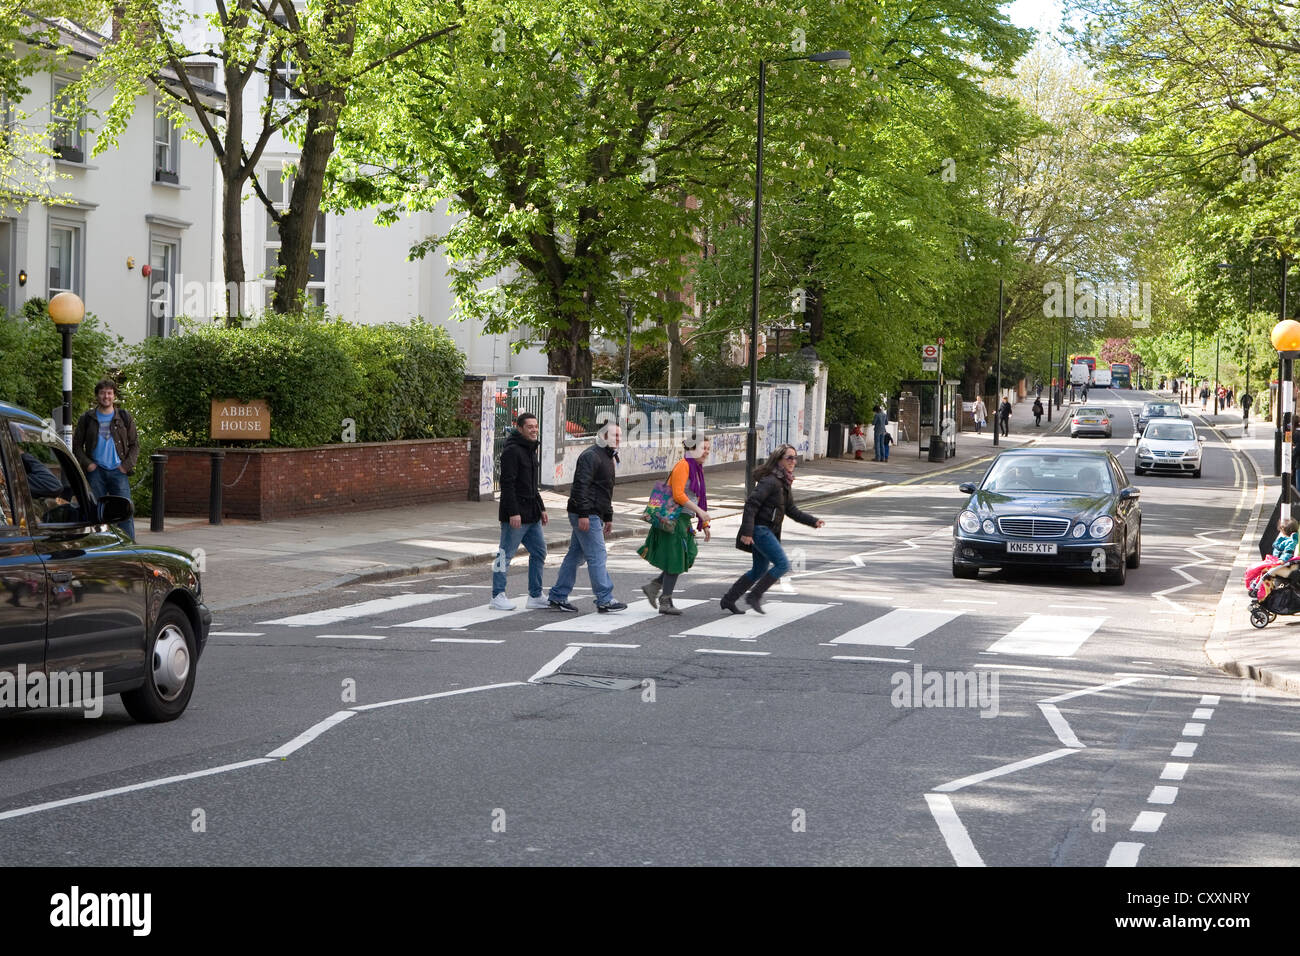 Abbey Road, turisti sul ben noto zebra crossing reso famoso attraverso i Beatles, London, England, Regno Unito, Europa Foto Stock